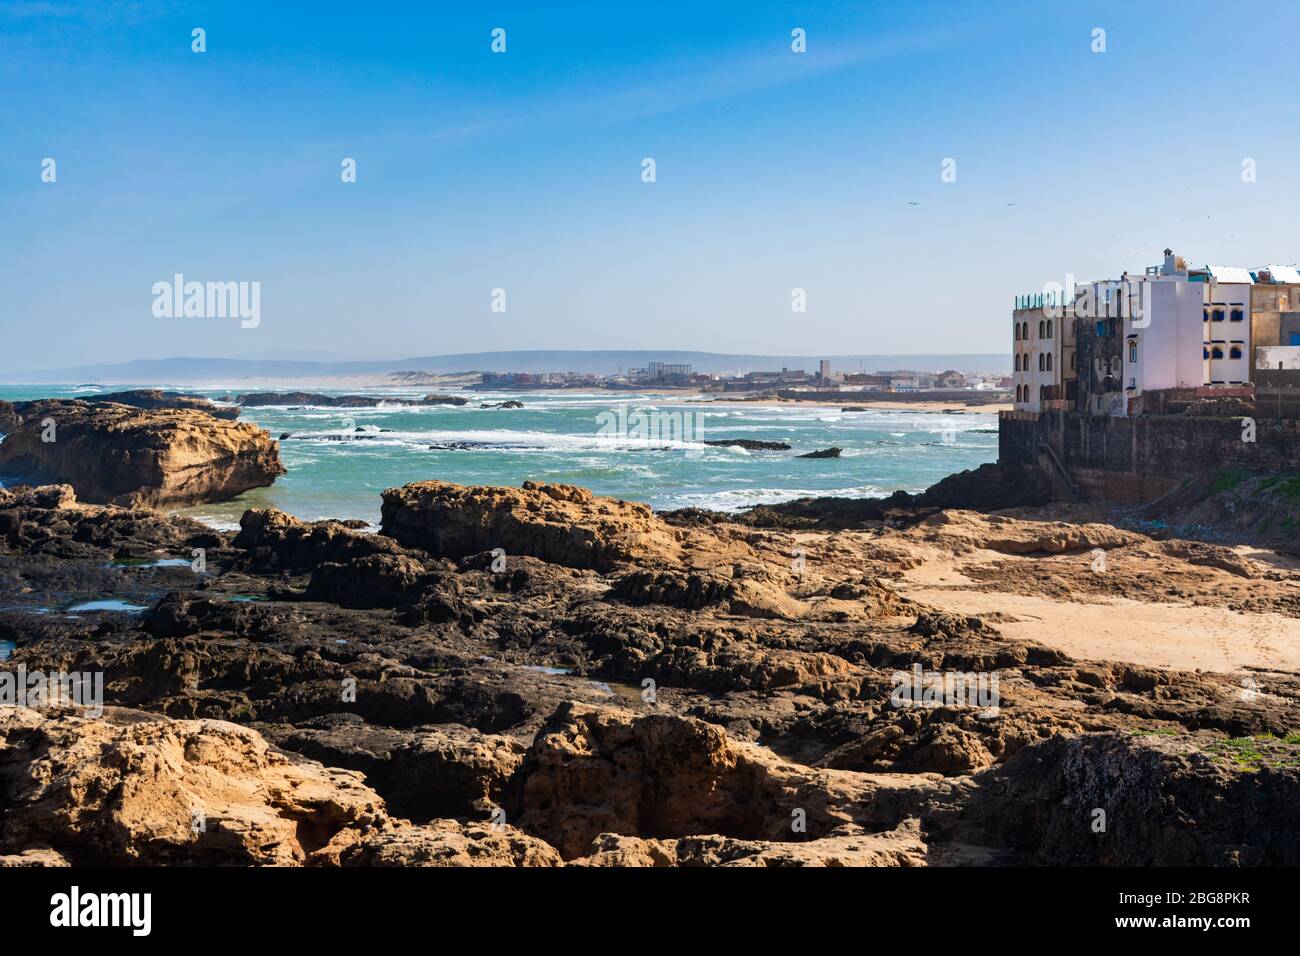 Un littoral rocheux avec bâtiments et l'océan Atlantique à Essaouira Maroc Banque D'Images